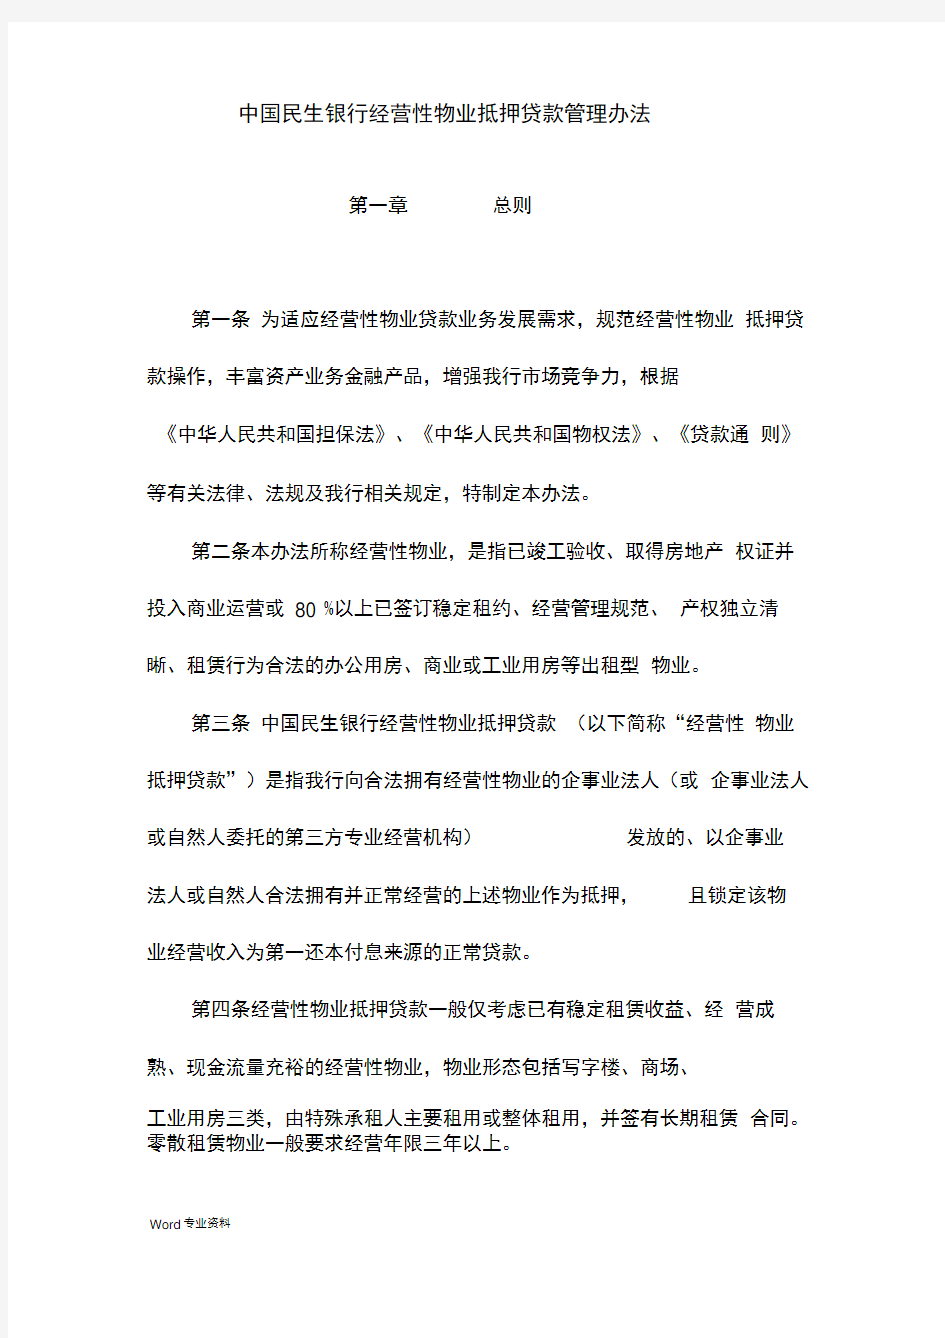 中国民生银行经营性物业抵押贷款管理办法